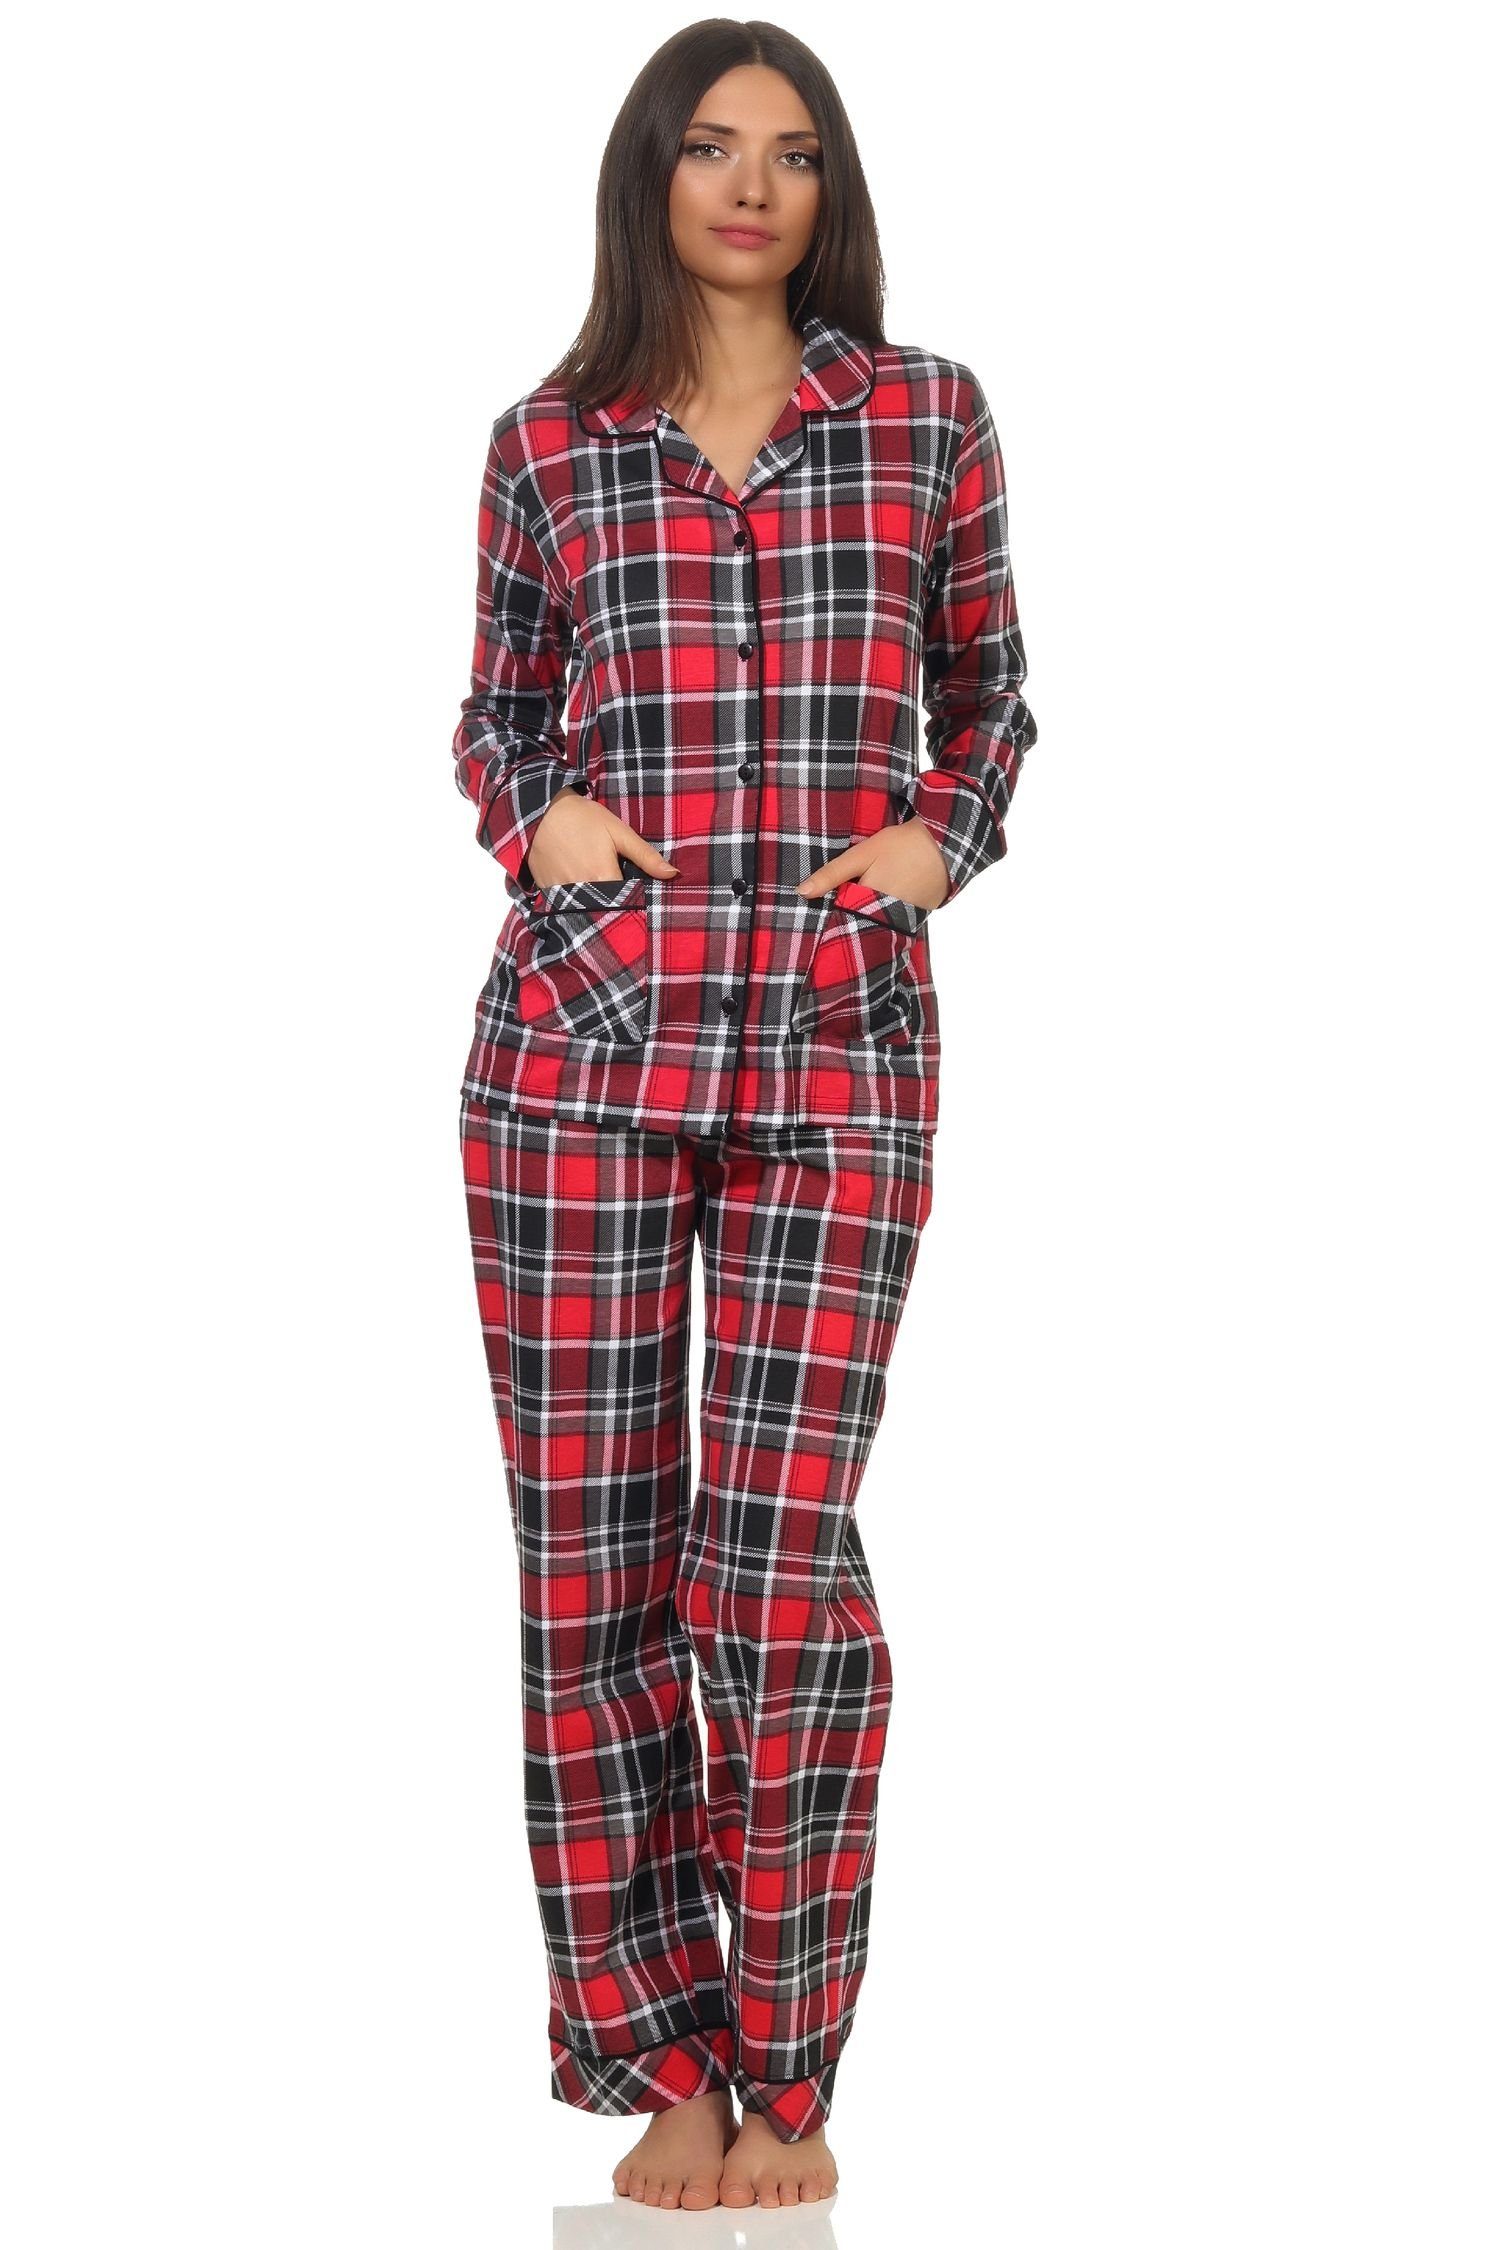 Jersey zum Pyjama Normann durchknöpfen in Qualität Damen in Pyjama Karo Single Optik